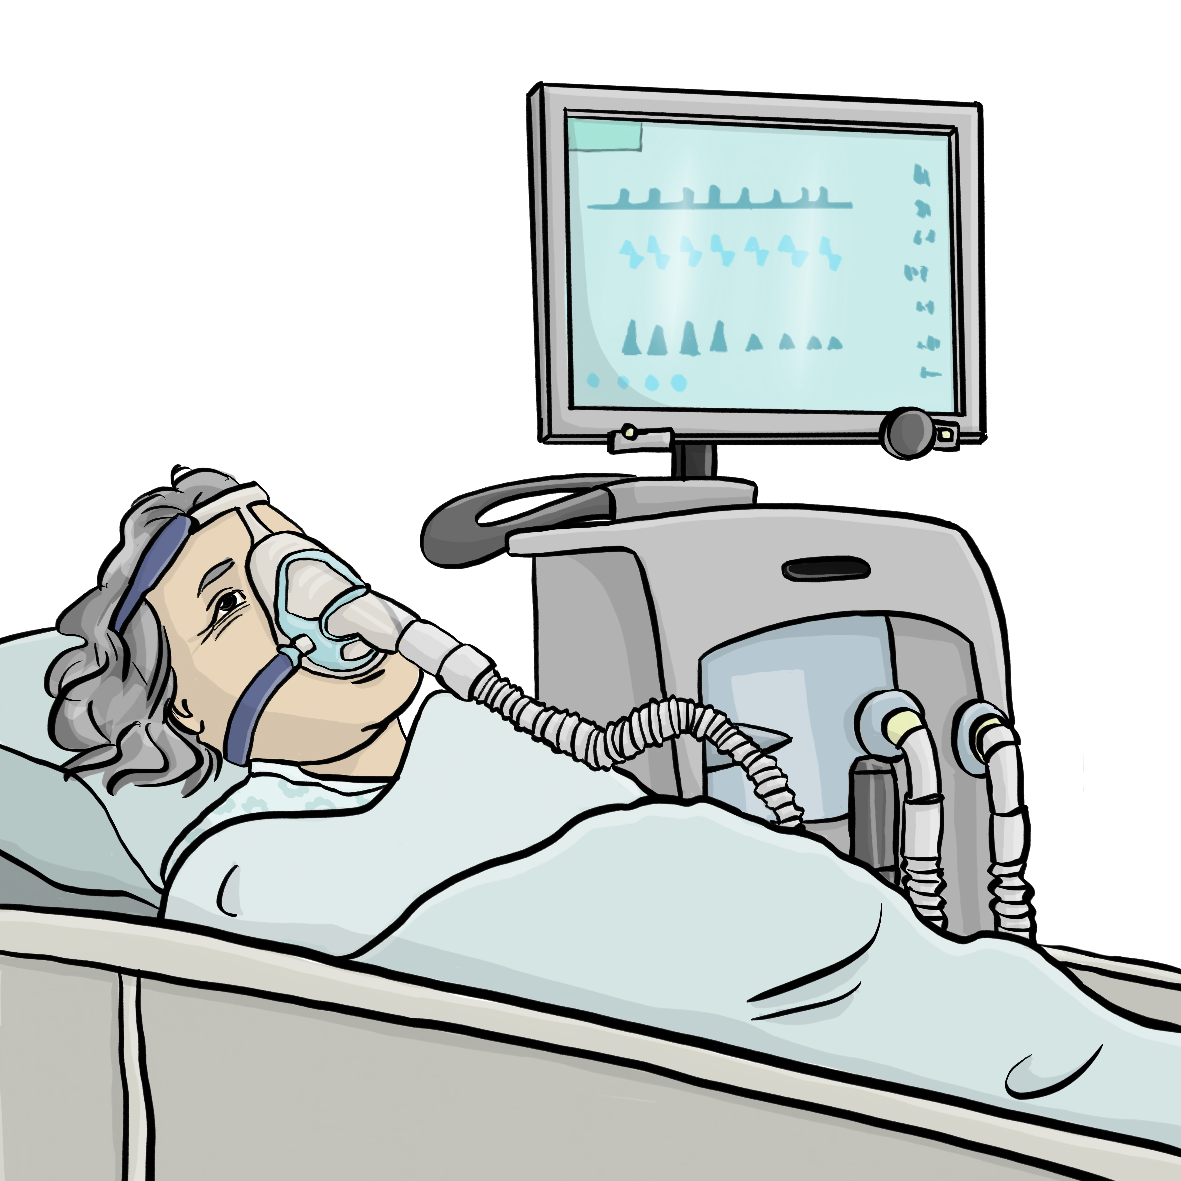 Eine ältere Frau liegt in einem Intensiv-Bett. Sie trägt eine Sauerstoff-Maske. Neben dem Bett steht ein Beatmungsgerät.